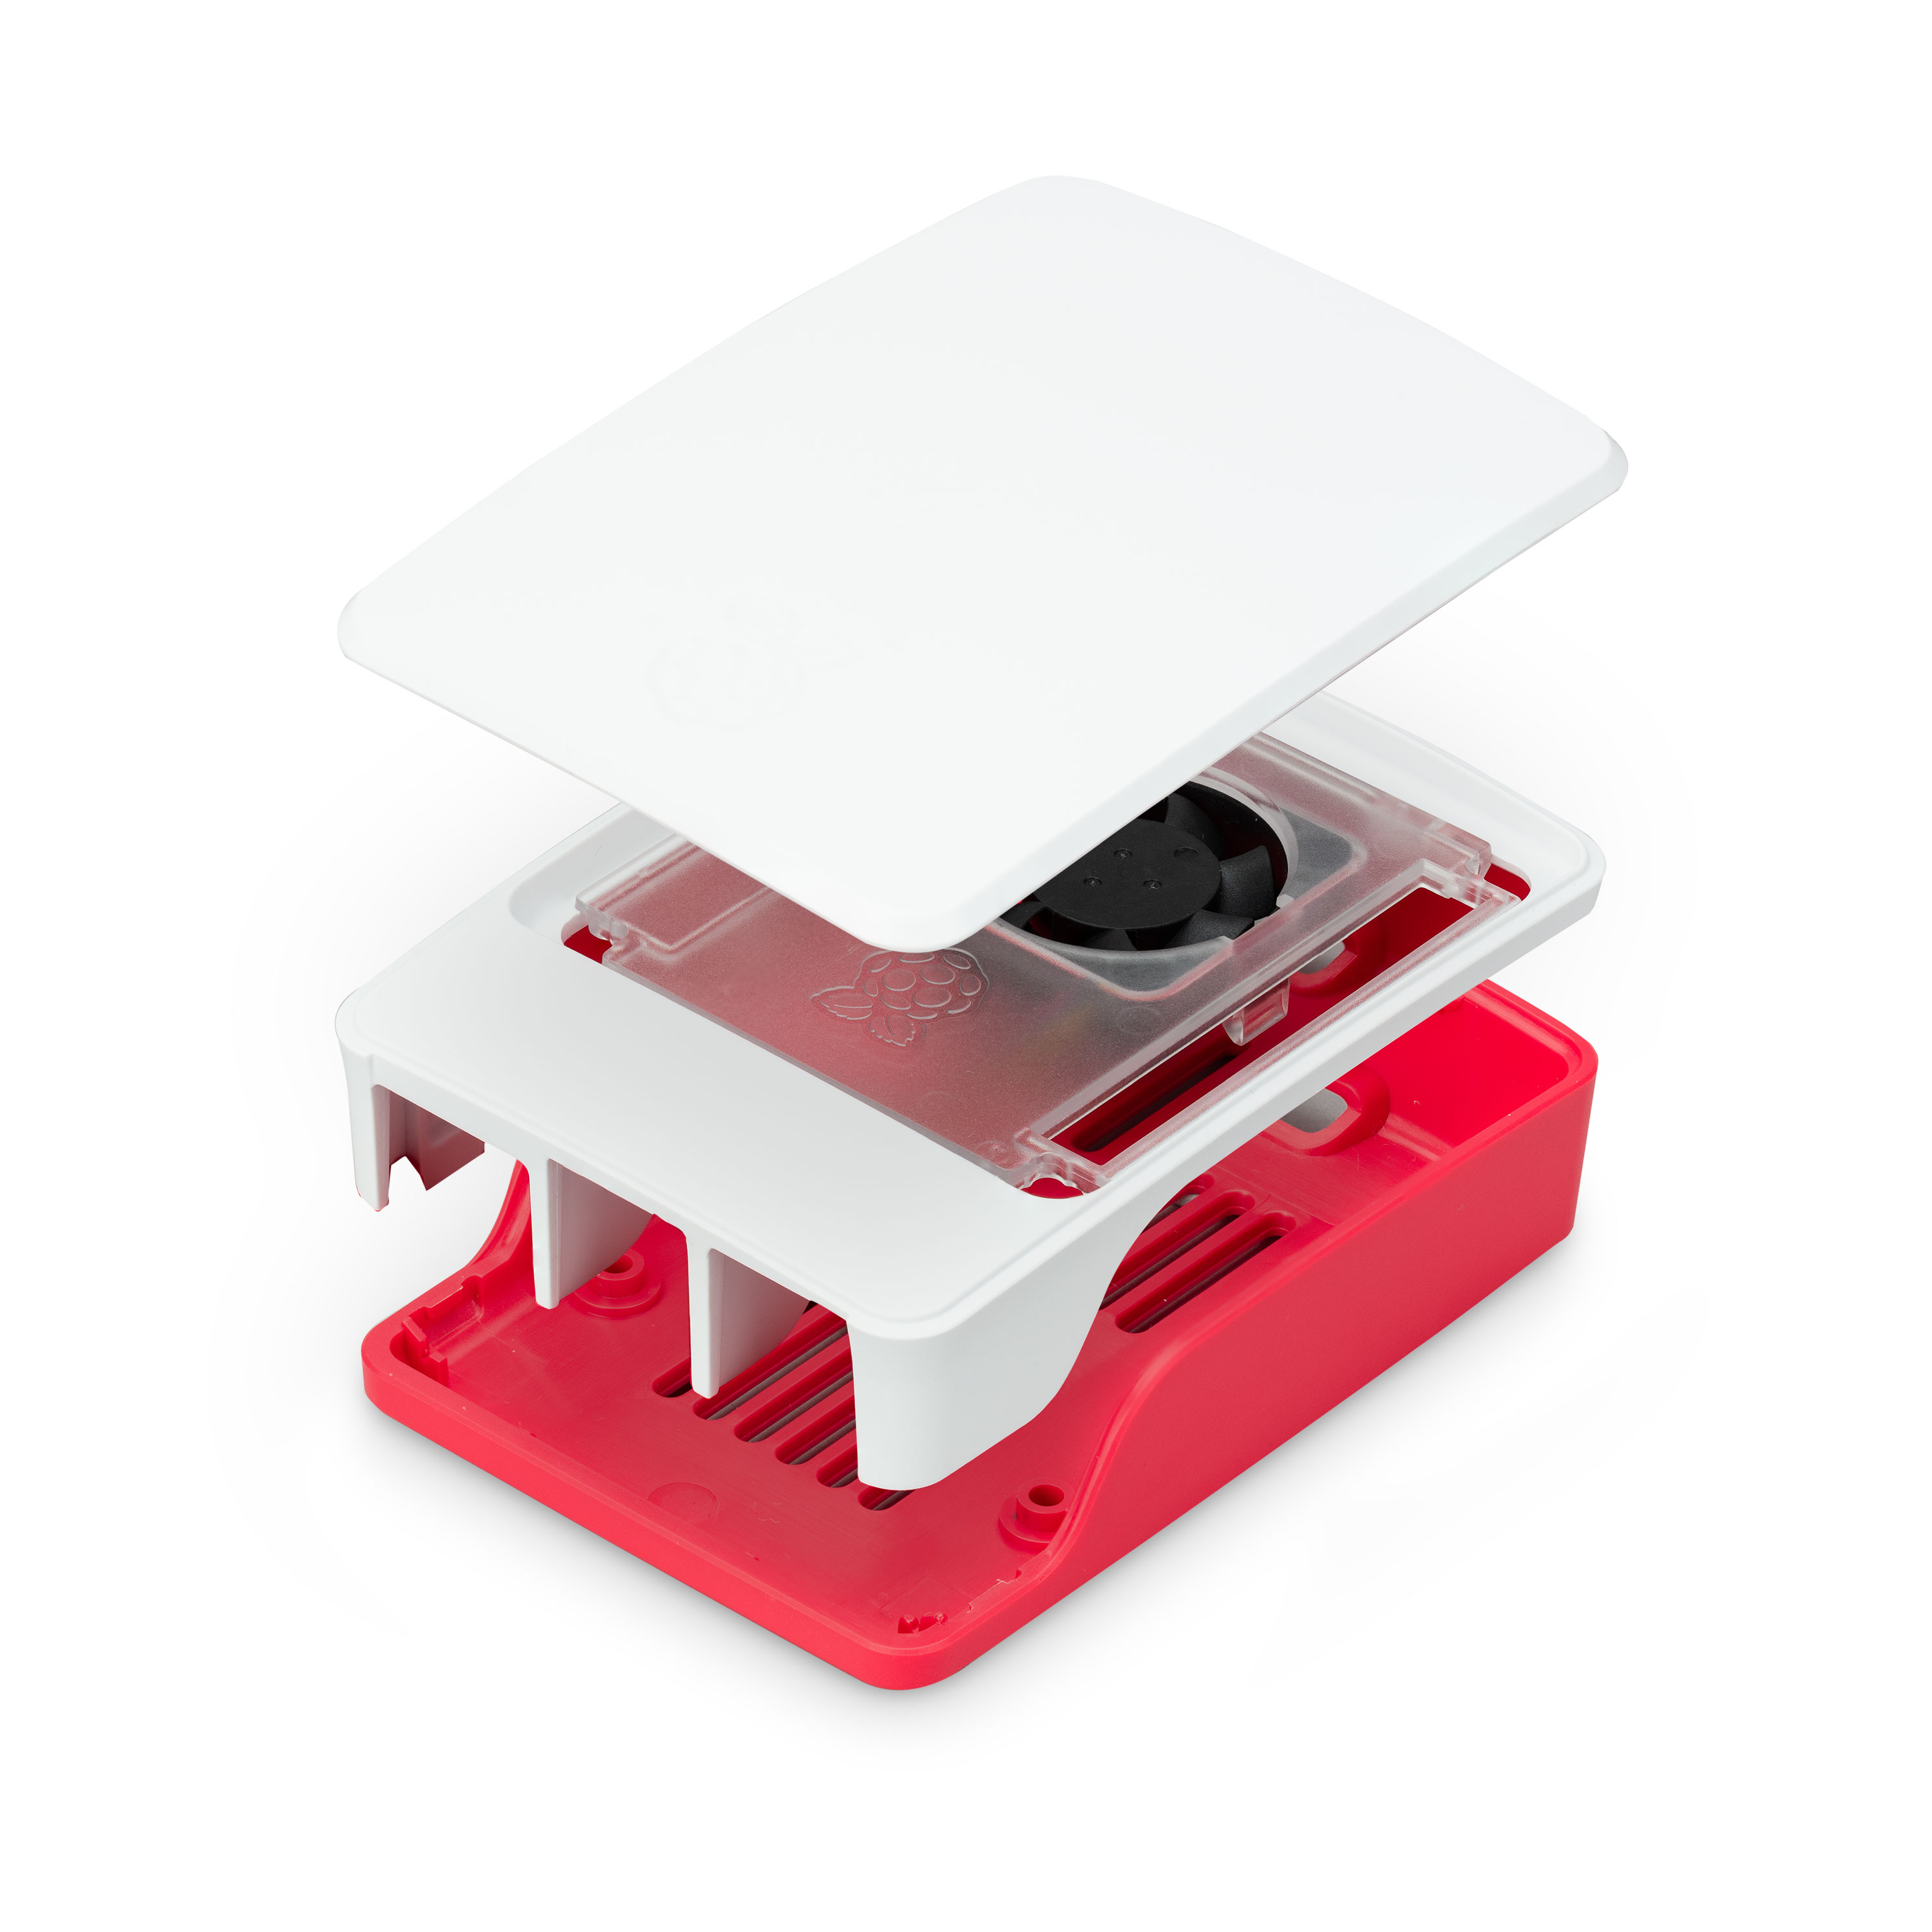 Raspberry - Caixa Oficial para Raspberry Pi 5 em Branco/Vermelho